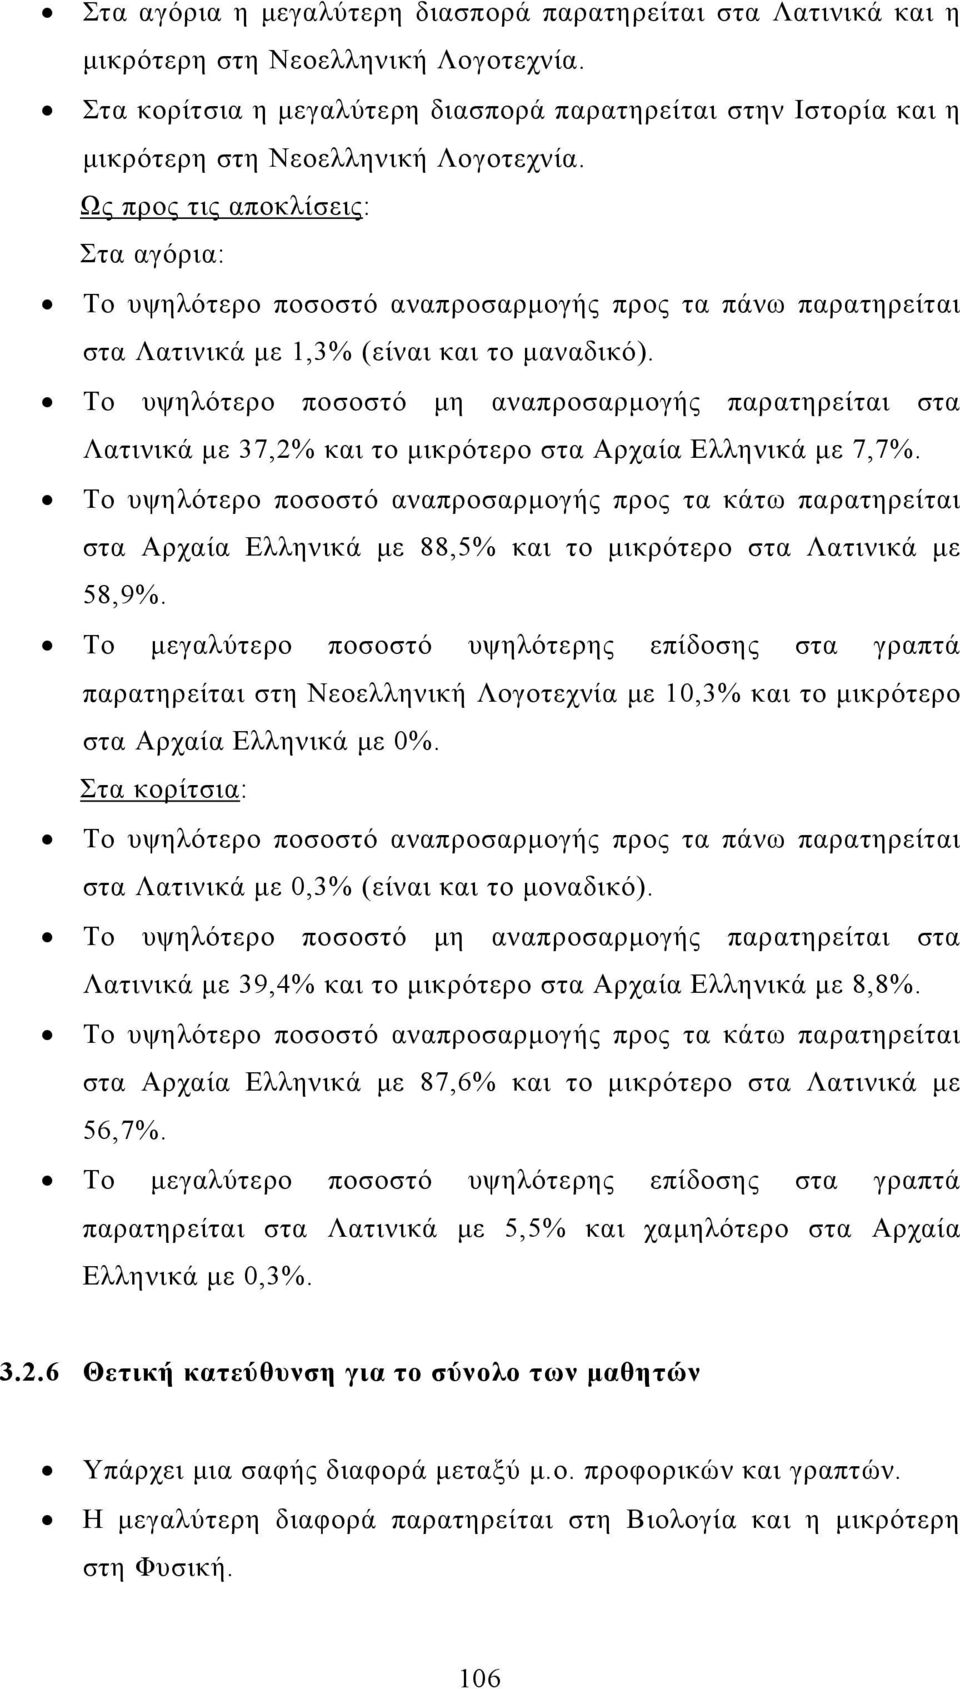 Το υψηλότερο ποσοστό μη αναπροσαρμογής παρατηρείται στα Λατινικά με 37,2% και το μικρότερο στα Αρχαία Ελληνικά με 7,7%. στα Αρχαία Ελληνικά με 88,5% και το μικρότερο στα Λατινικά με 58,9%.